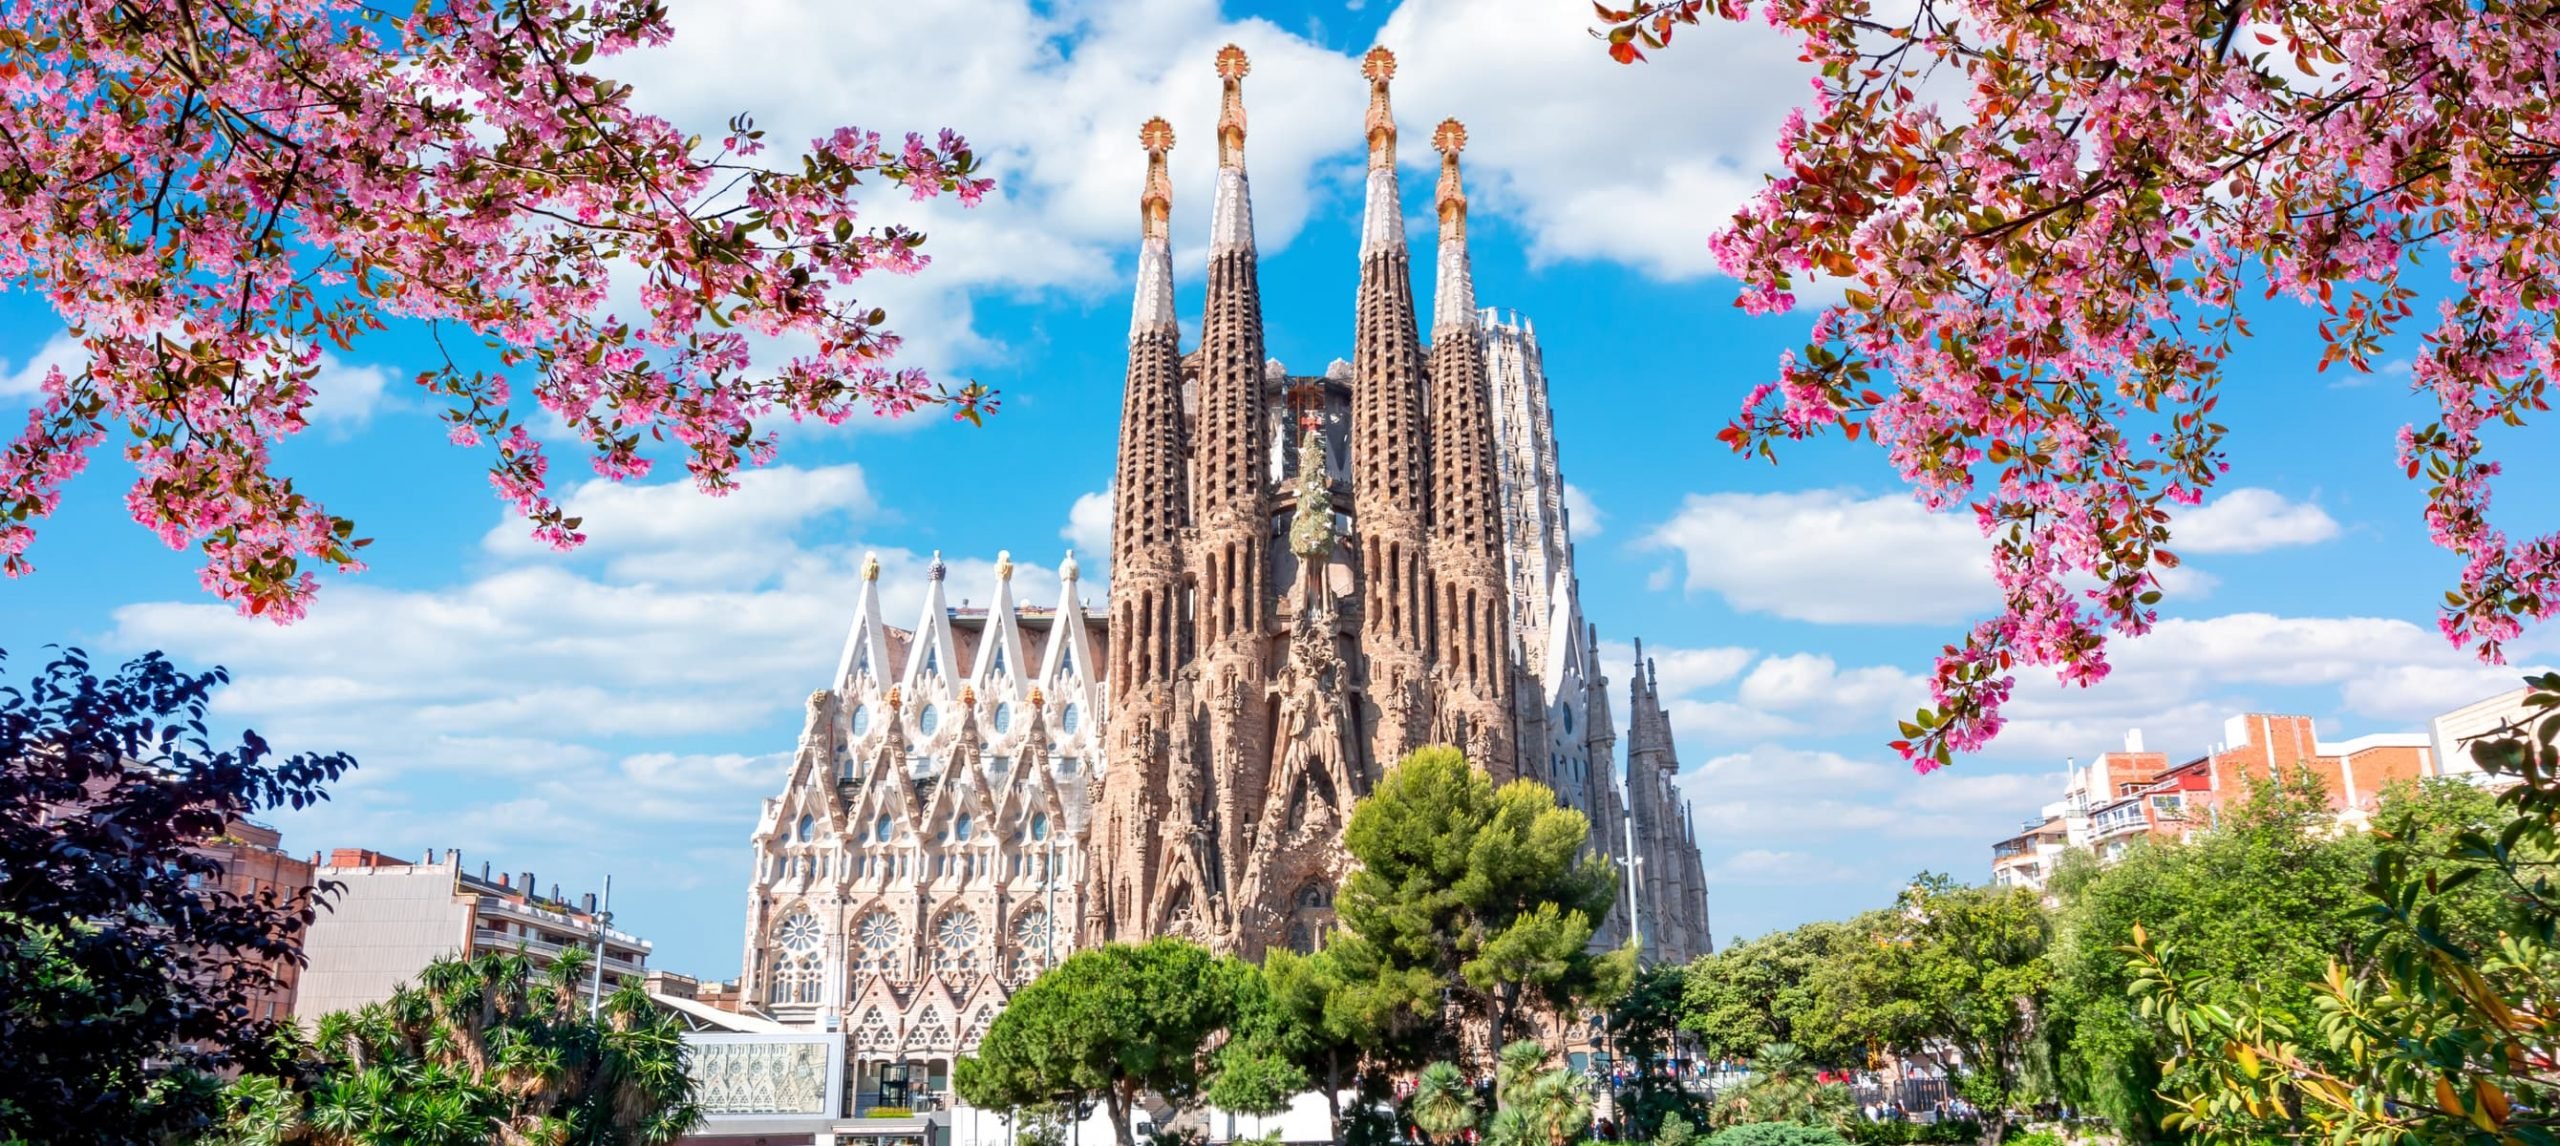 La Sagrada Familia: Travel Guide, History & Facts